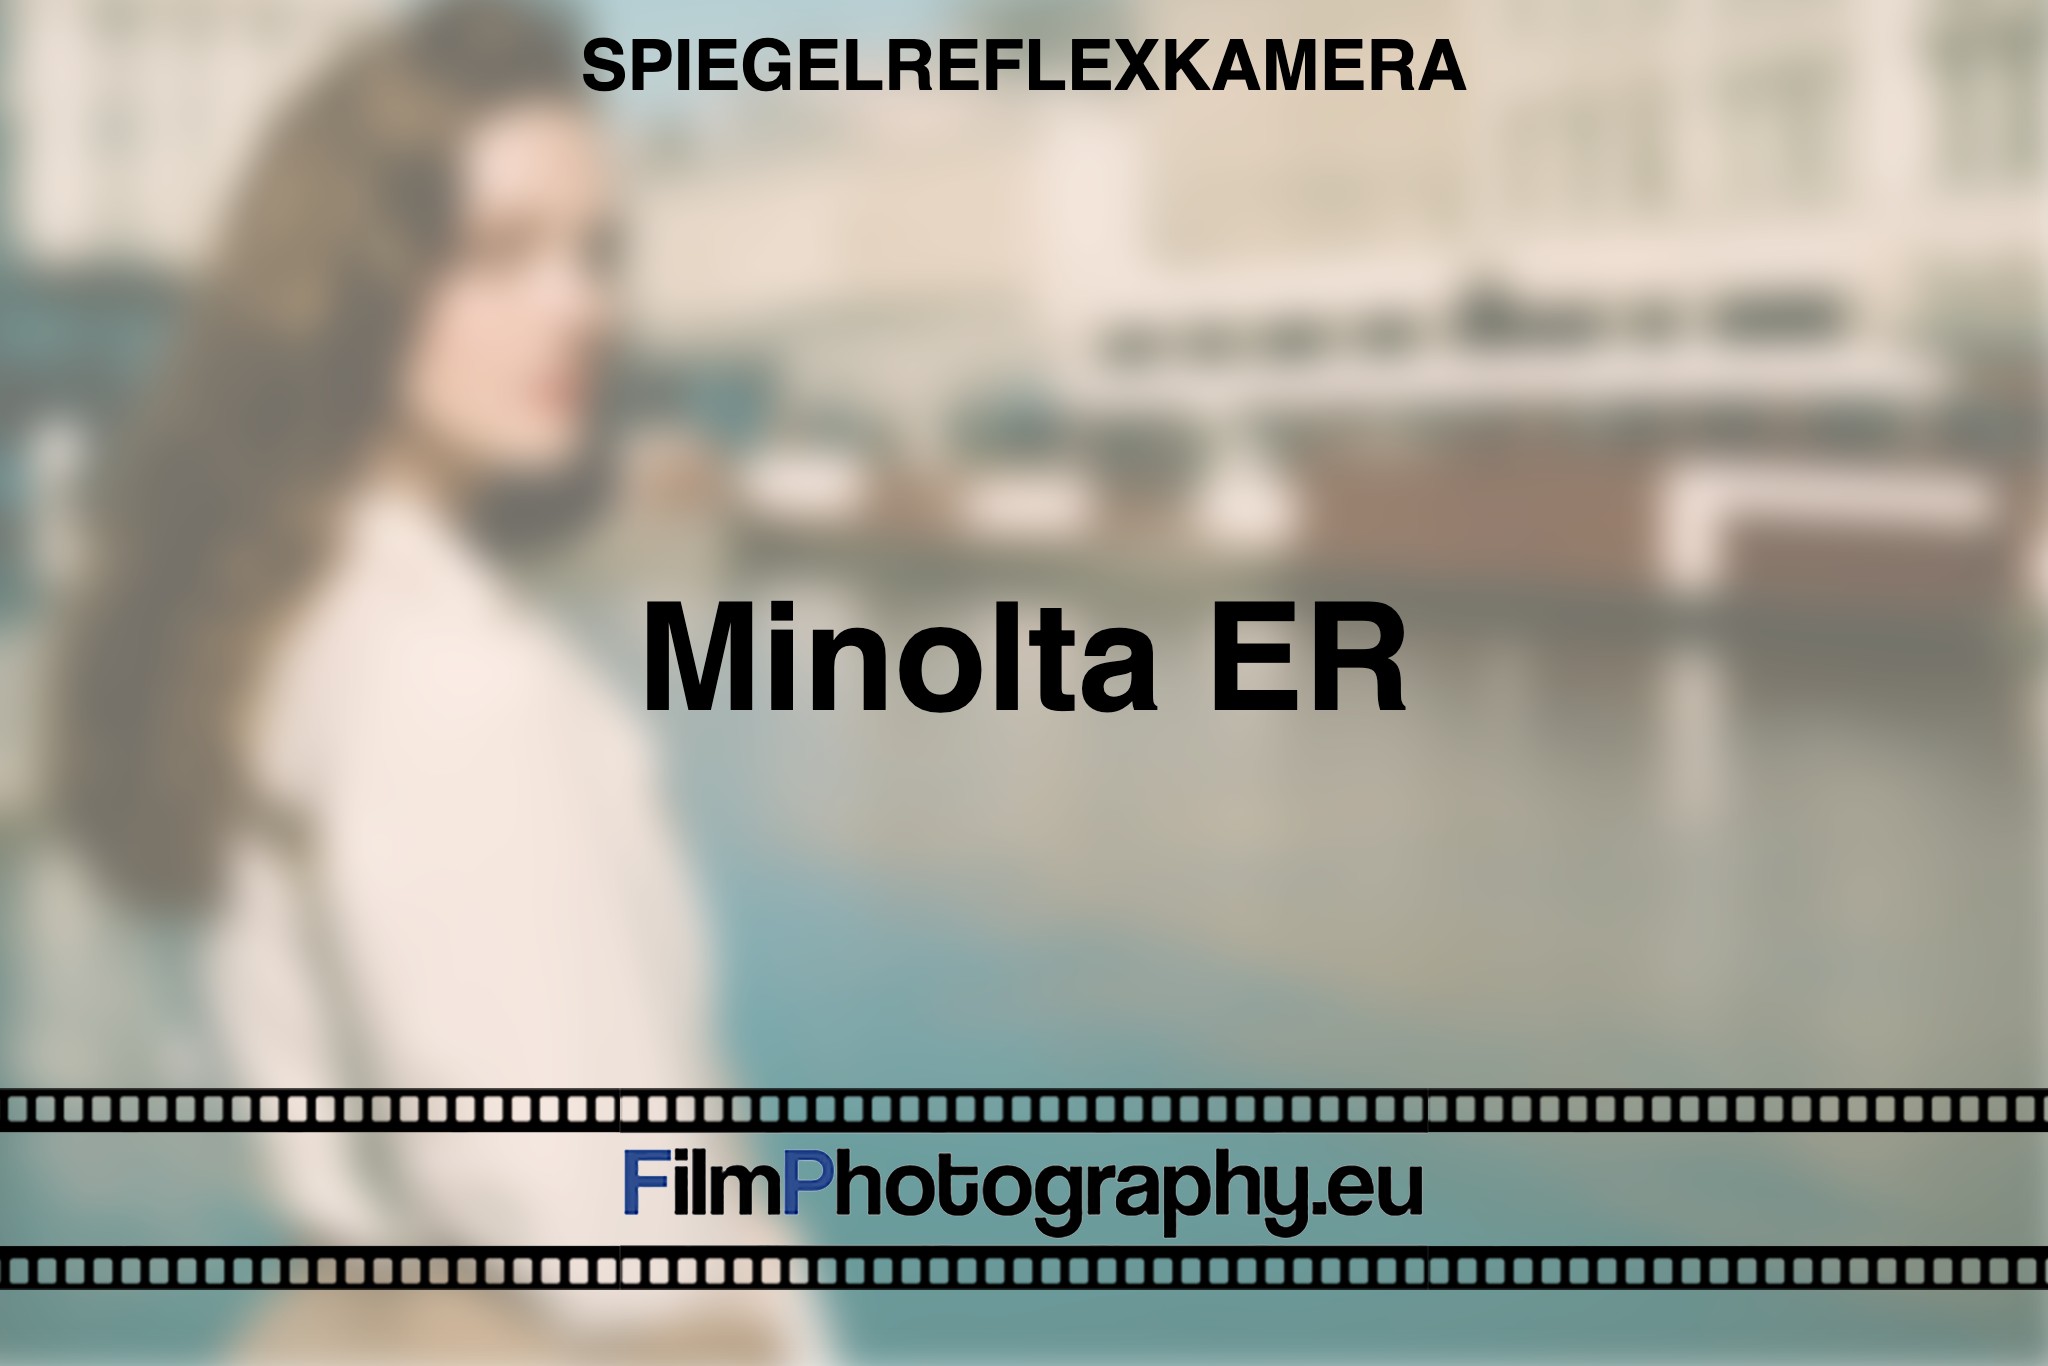 minolta-er-spiegelreflexkamera-bnv